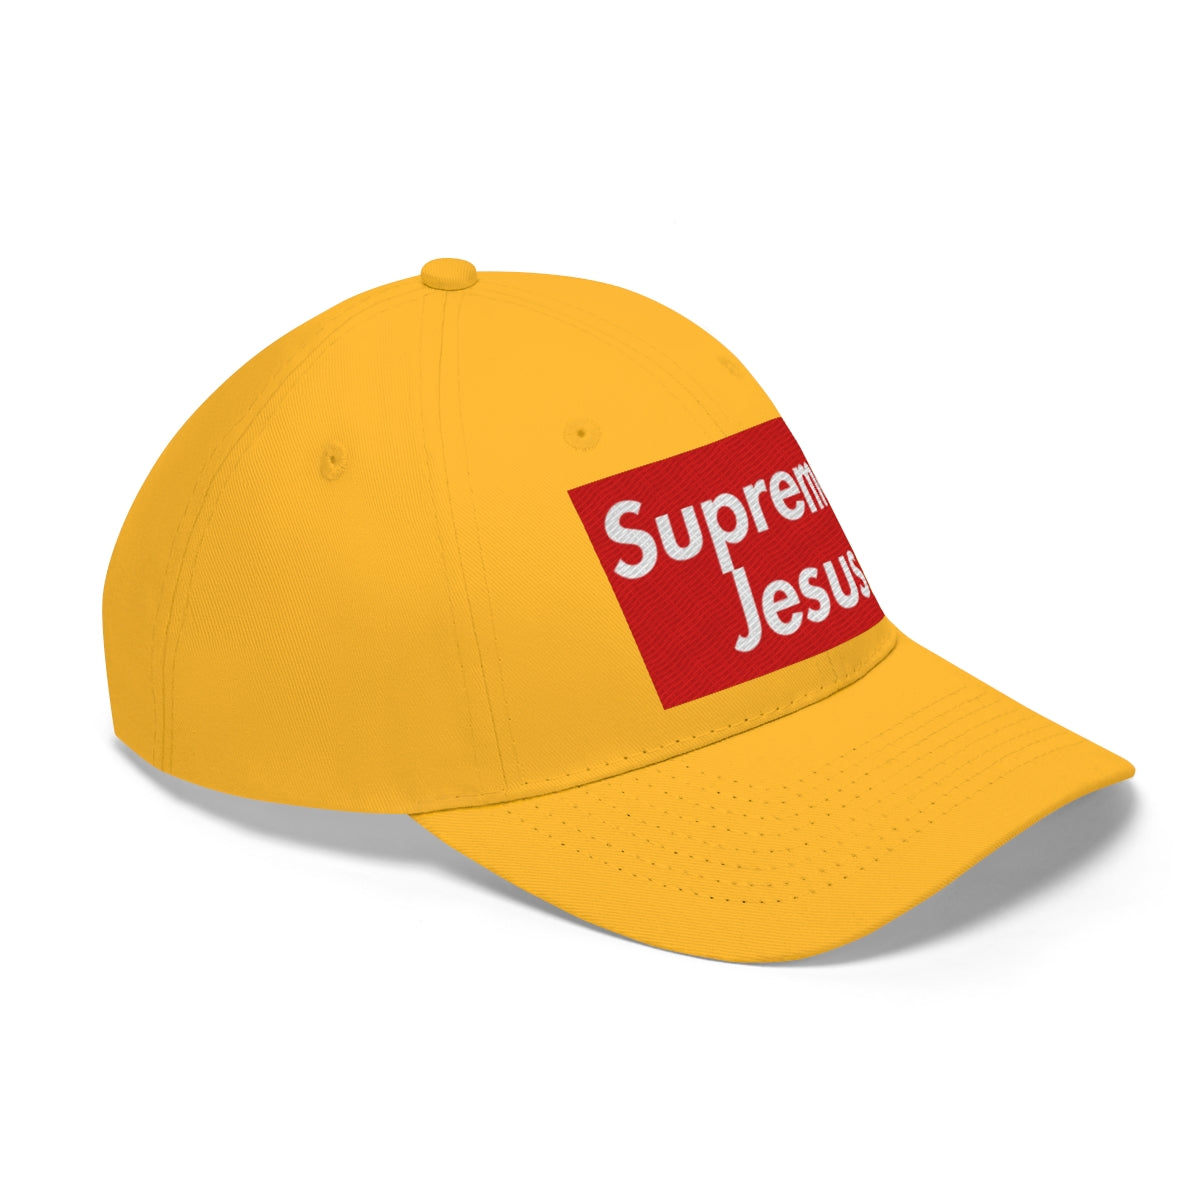 Supreme Jesus Hat